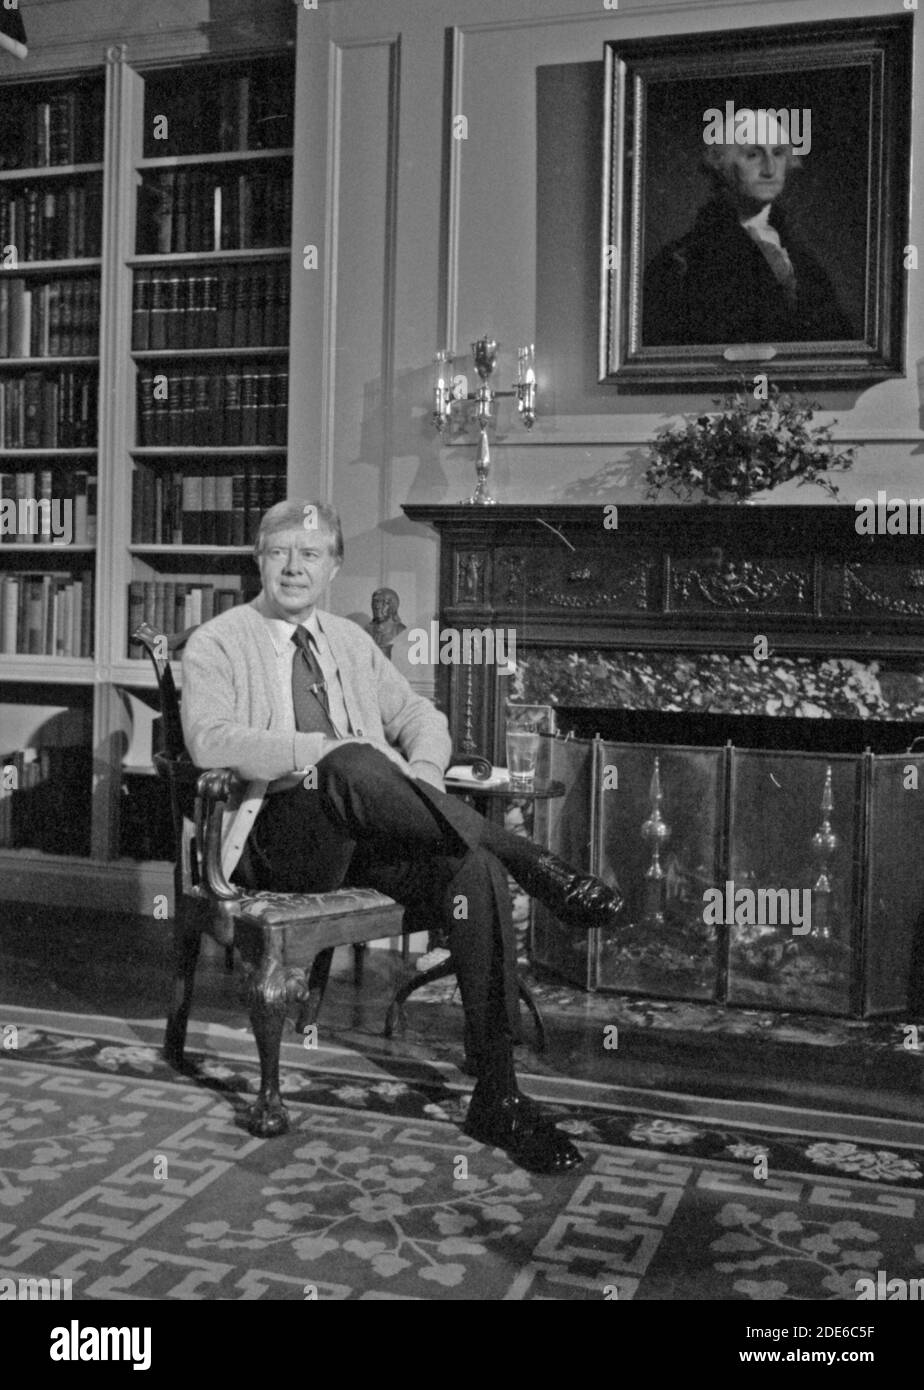 Photographie de Jimmy carter dans la bibliothèque de la Maison Blanche lors d'une conversation télévisée Fireside sur Energy CA. 2 février 1977 Banque D'Images